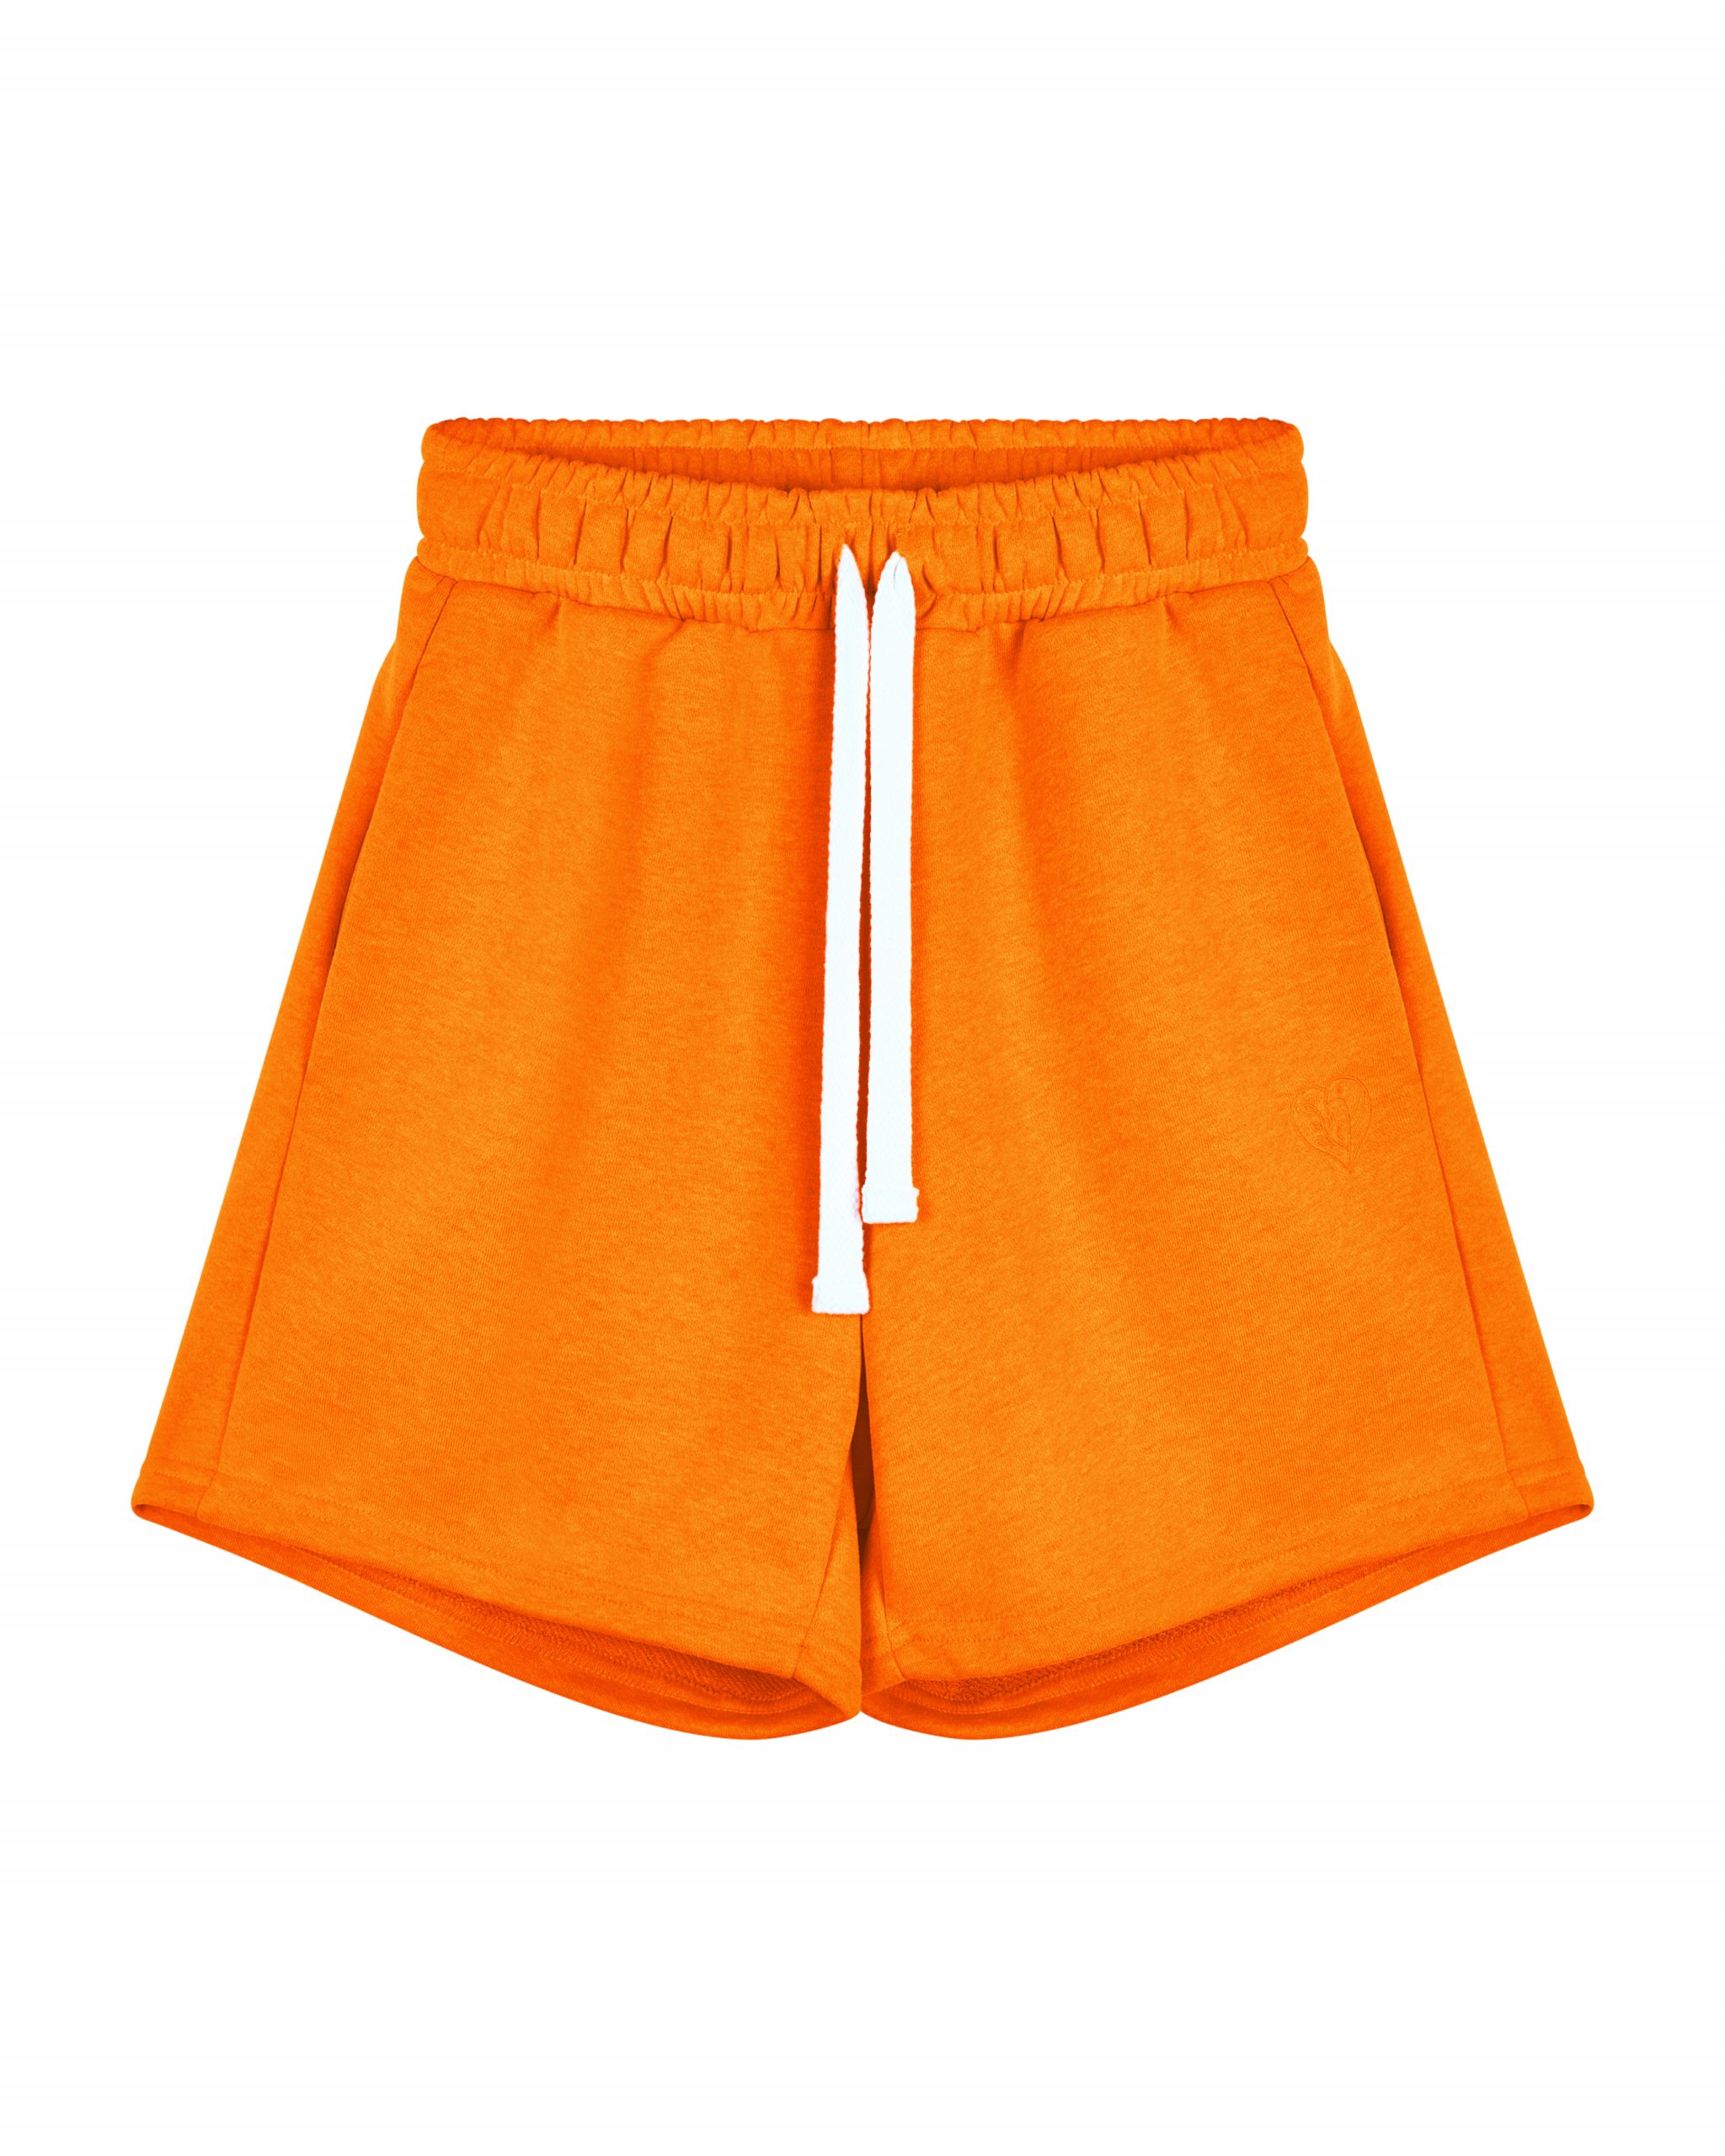 Повседневные шорты женские Atmosphere Summer vibes Color оранжевые S